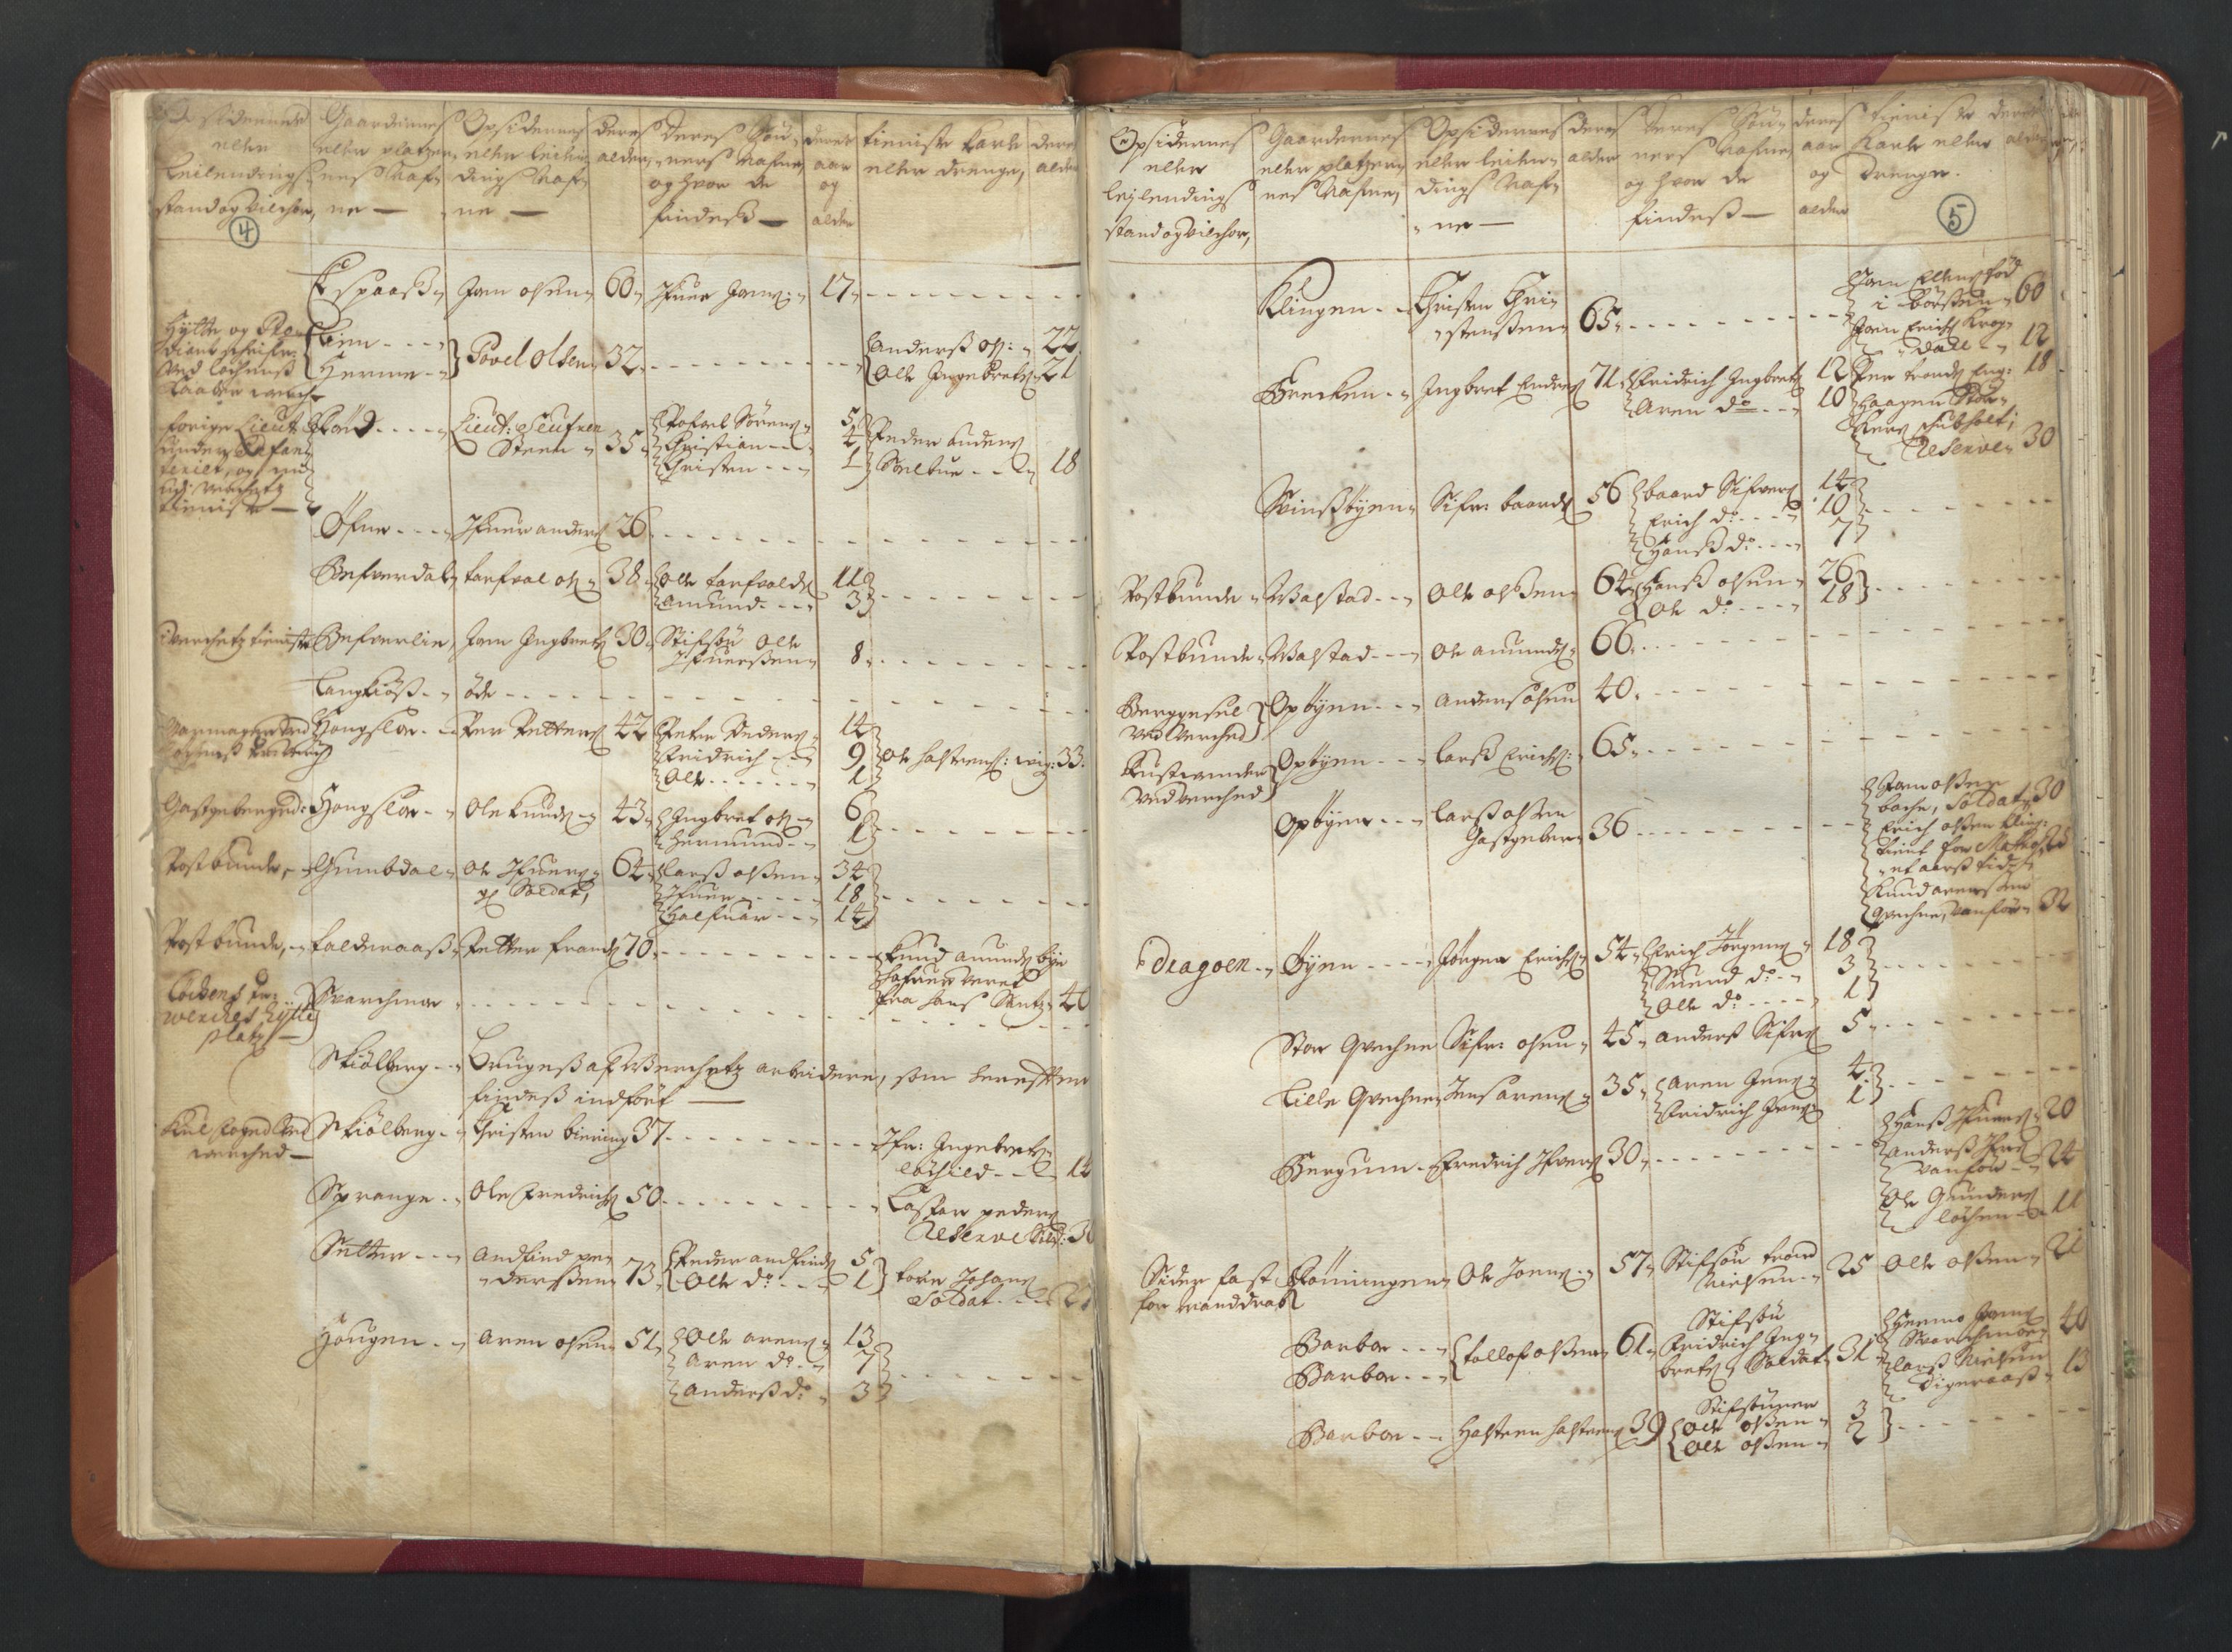 RA, Manntallet 1701, nr. 13: Orkdal fogderi og Gauldal fogderi med Røros kobberverk, 1701, s. 4-5